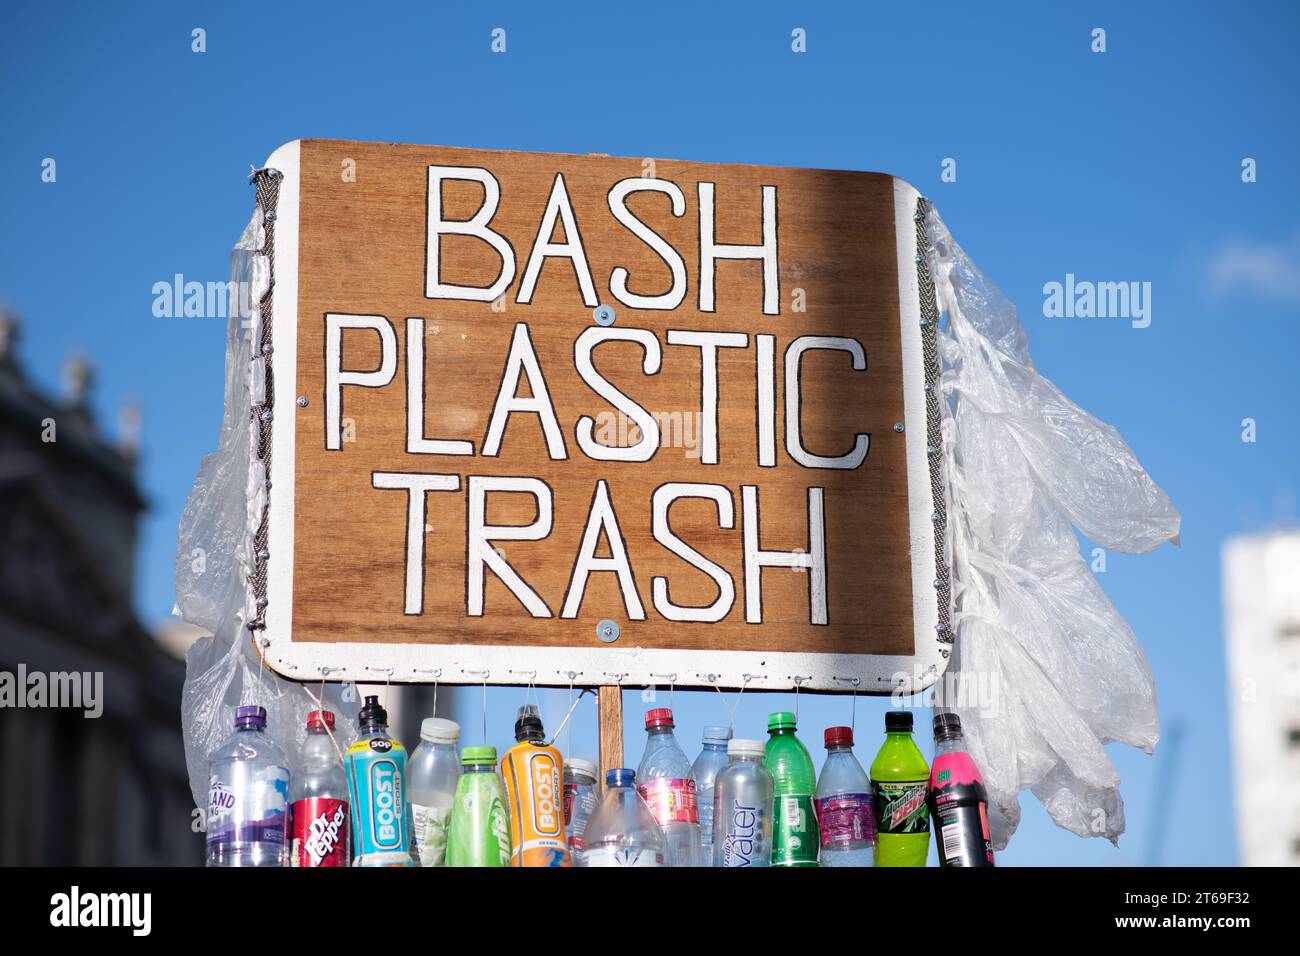 Auf einem Schild, das hoch über einem blauen Himmel steht, steht „BASH PLASTIC MÜLLEIMER“ mit einer Linie aus Plastikflaschen darunter Stockfoto